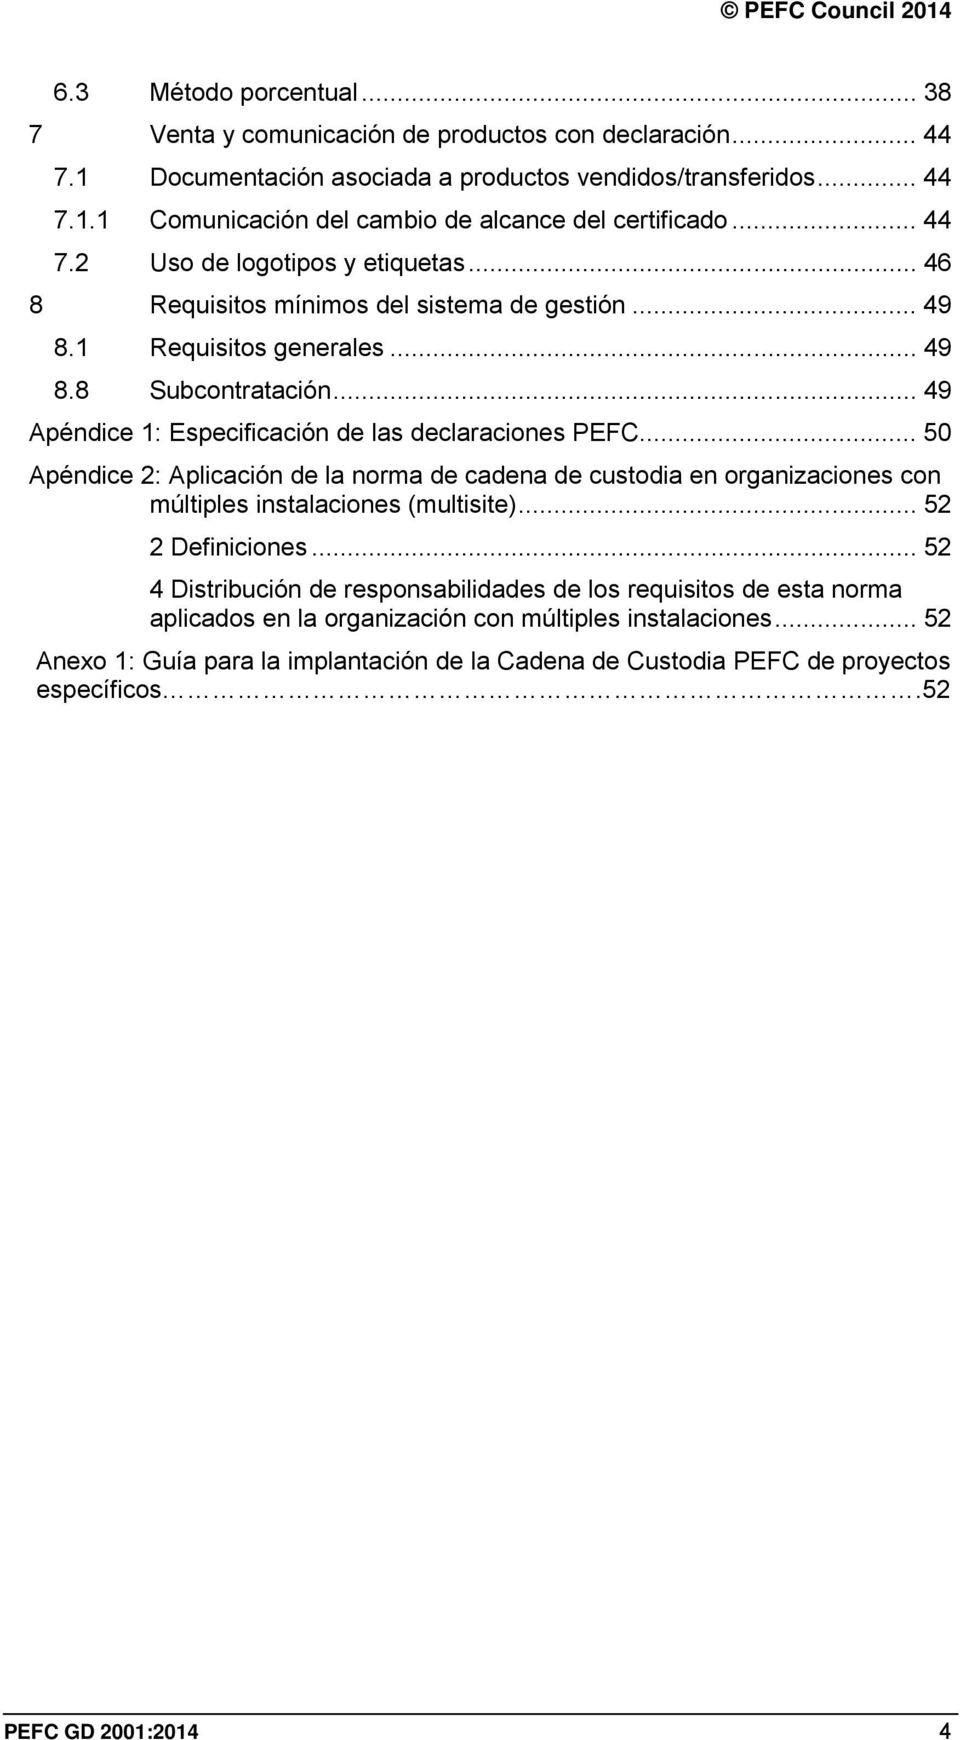 .. 49 Apéndice 1: Especificación de las declaraciones PEFC... 50 Apéndice 2: Aplicación de la norma de cadena de custodia en organizaciones con múltiples instalaciones (multisite)... 52 2 Definiciones.